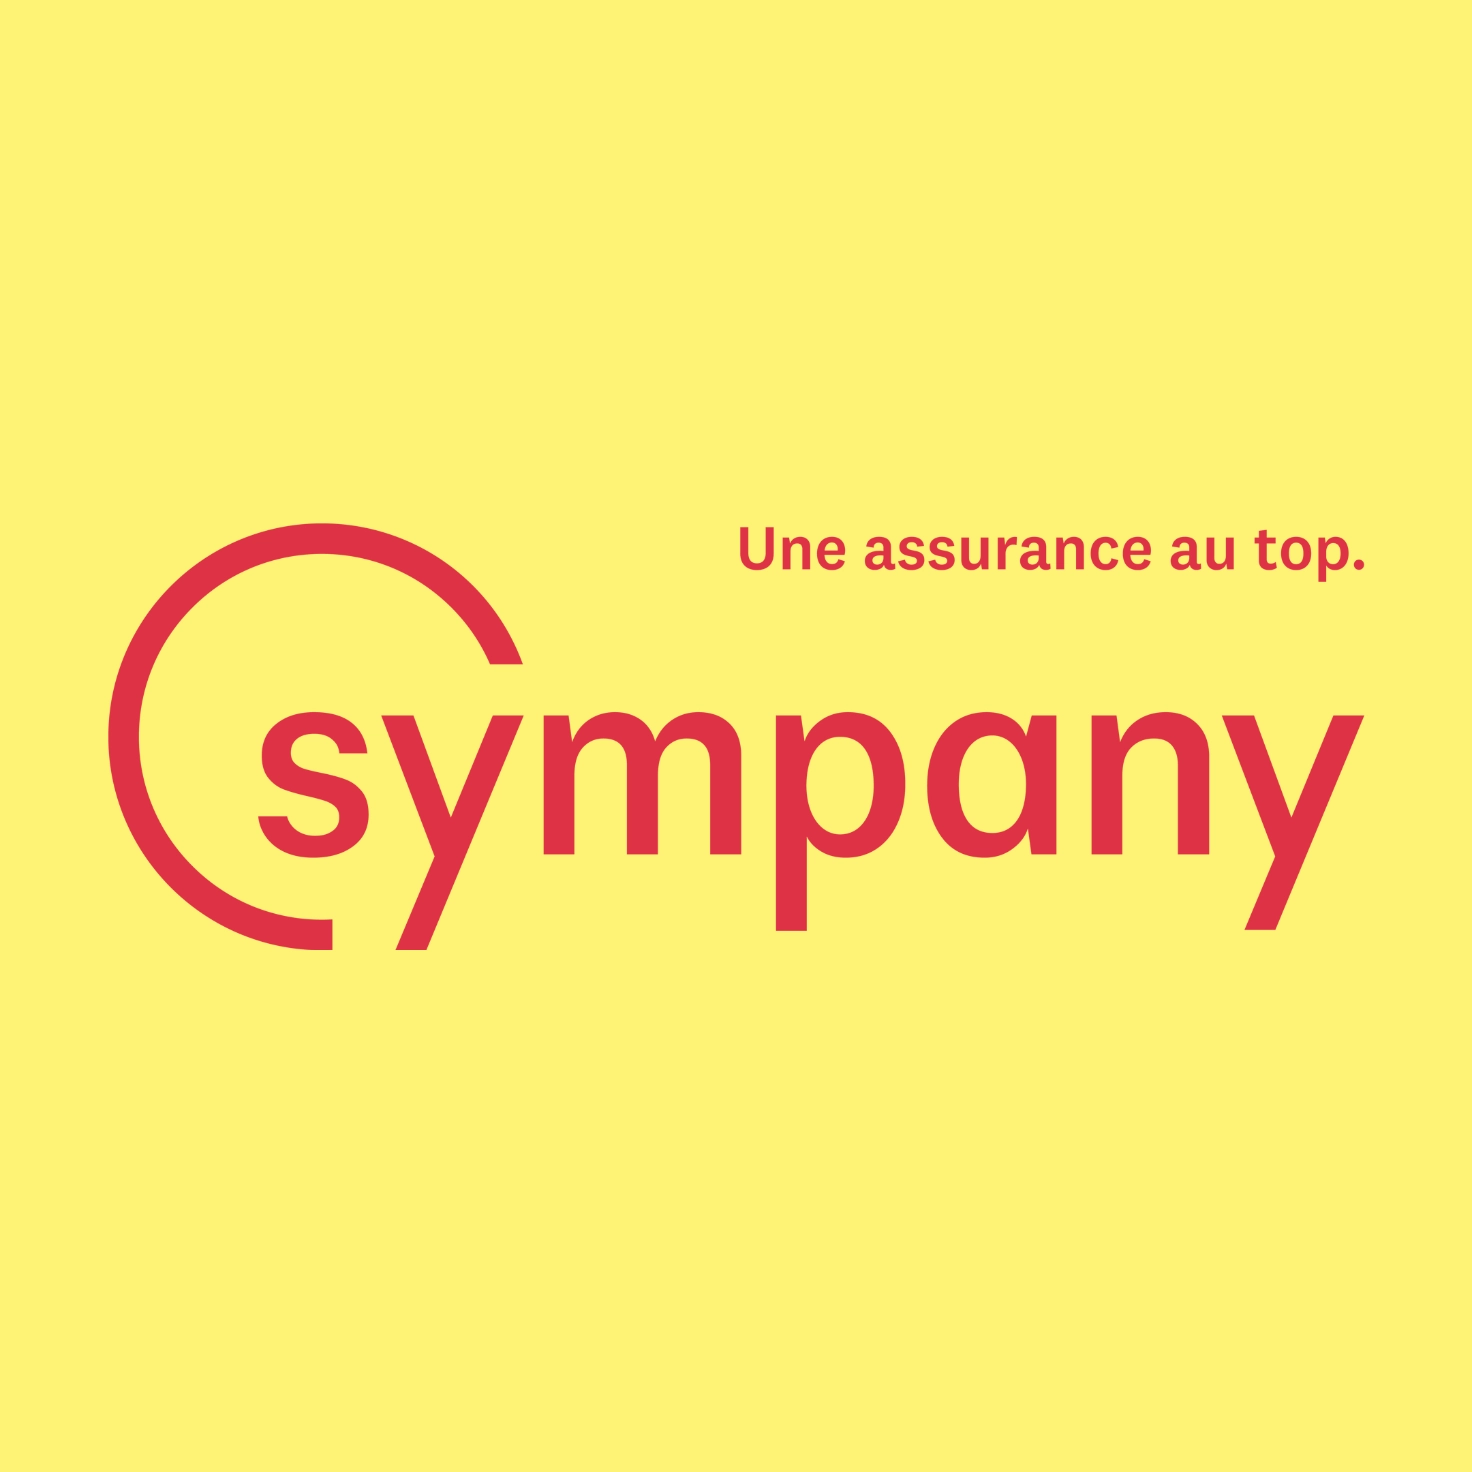 Logo de l'assureur Sympany incluant le slogan "Une assurance au top"